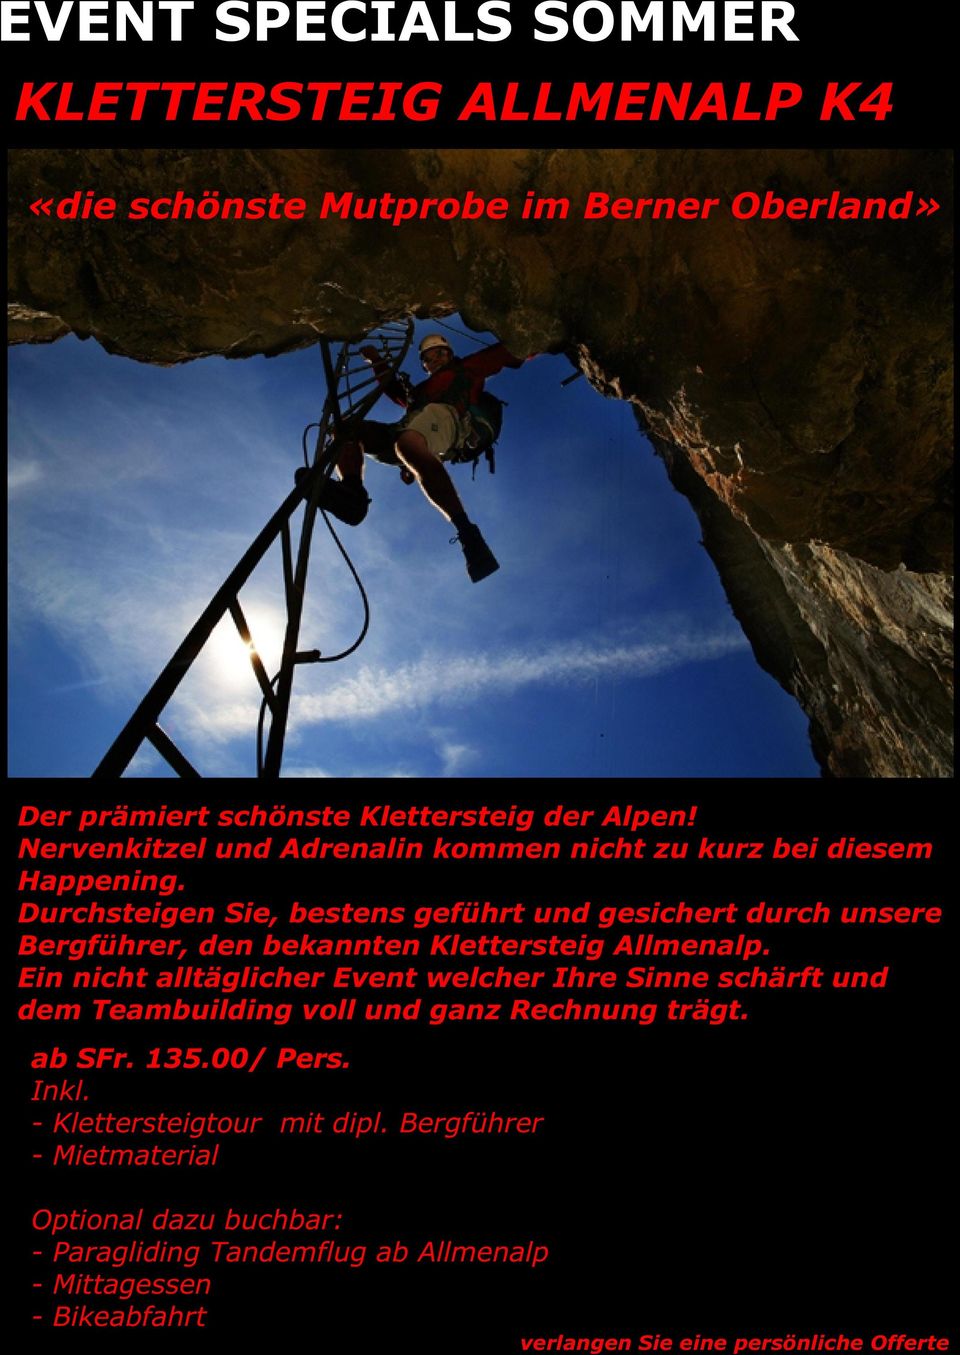 Durchsteigen Sie, bestens geführt und gesichert durch unsere Bergführer, den bekannten Klettersteig Allmenalp.